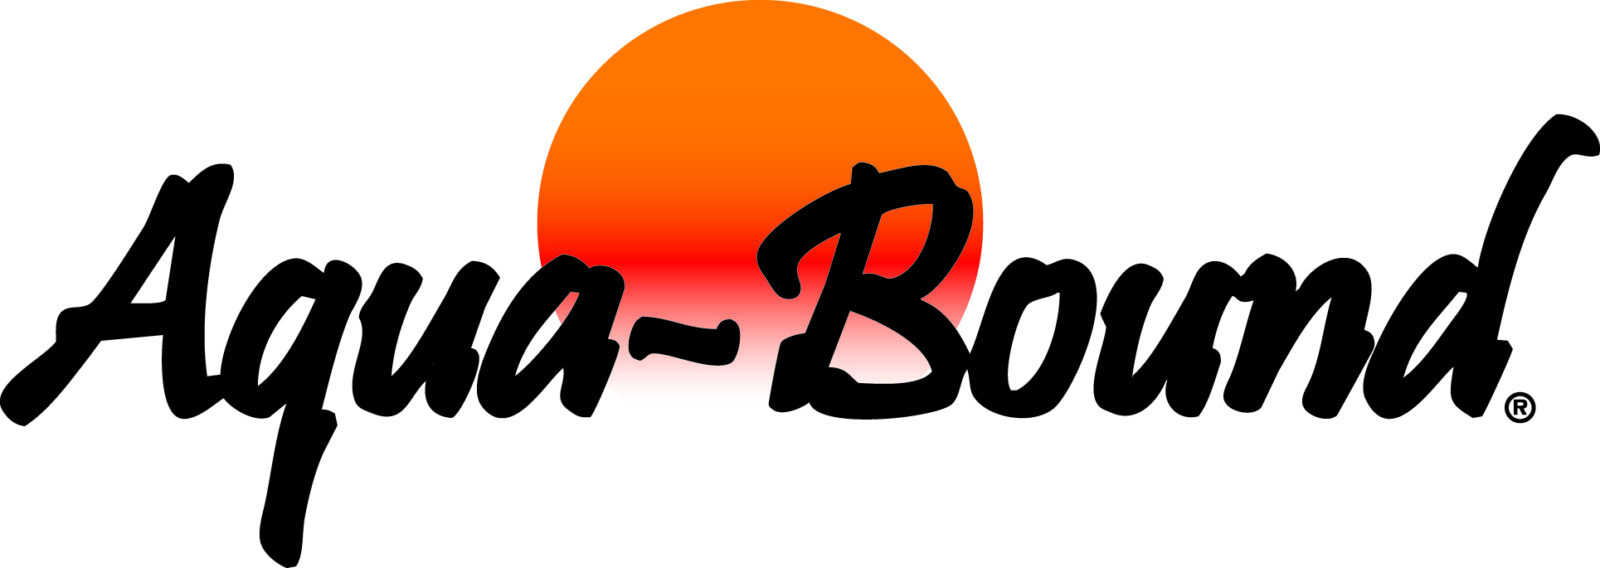 Aqua Bound logo